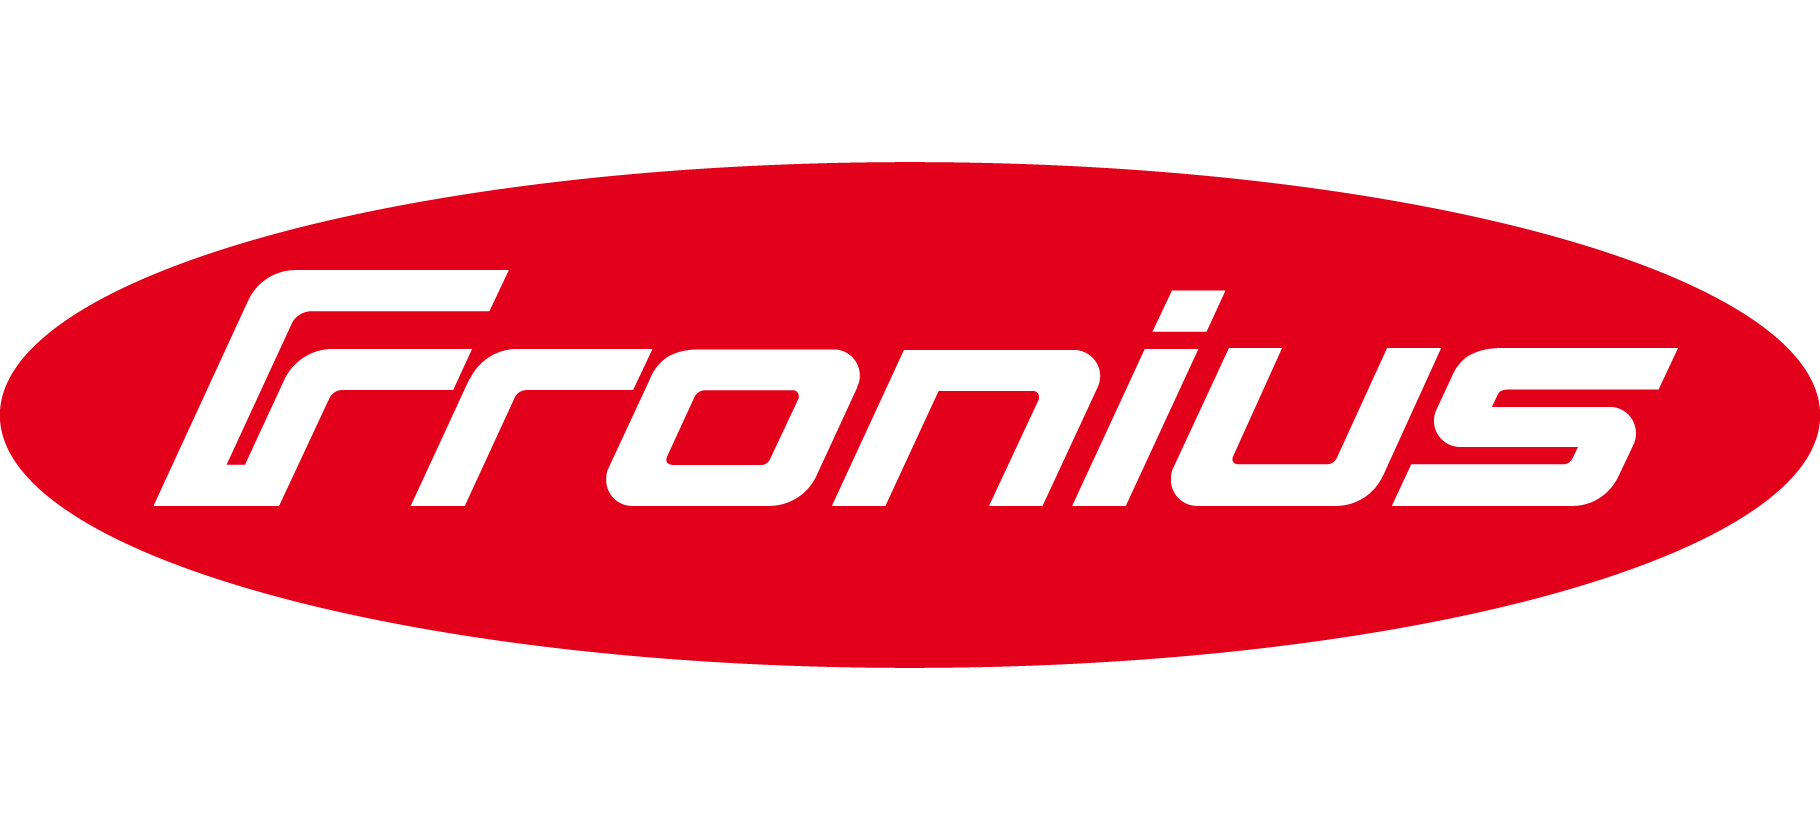 Logo-Fronius-1820x830.jpg